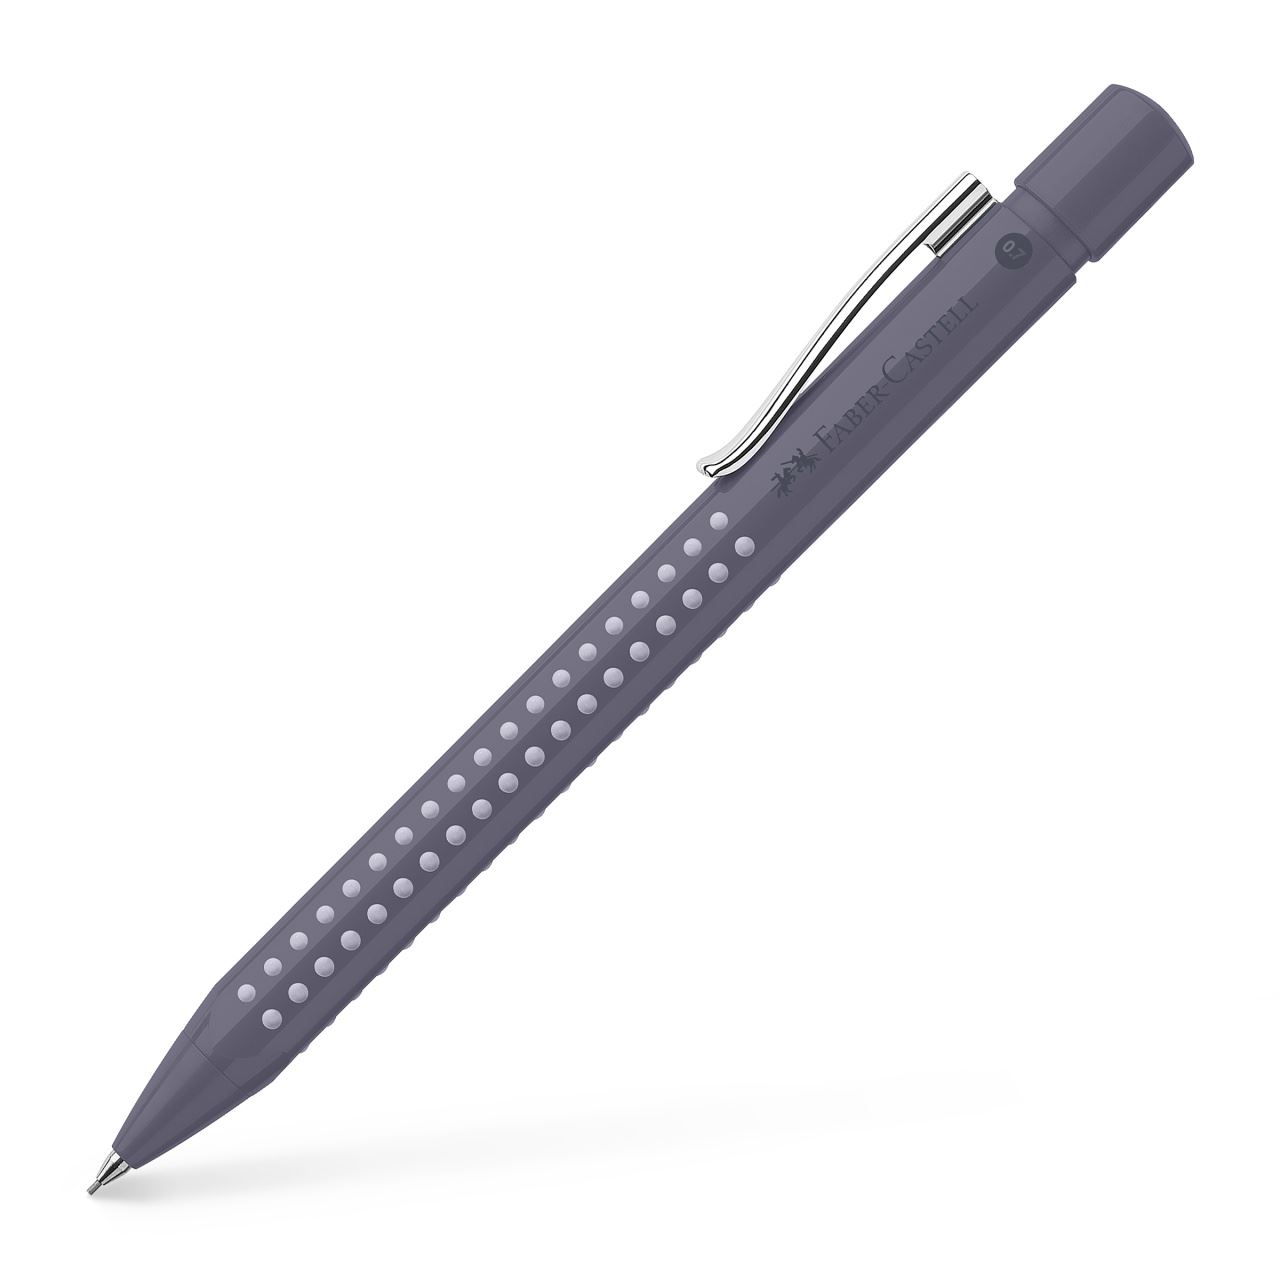 Faber-Castell - Mechanical pencil Grip 2010, 0.7 mm, dapple gray